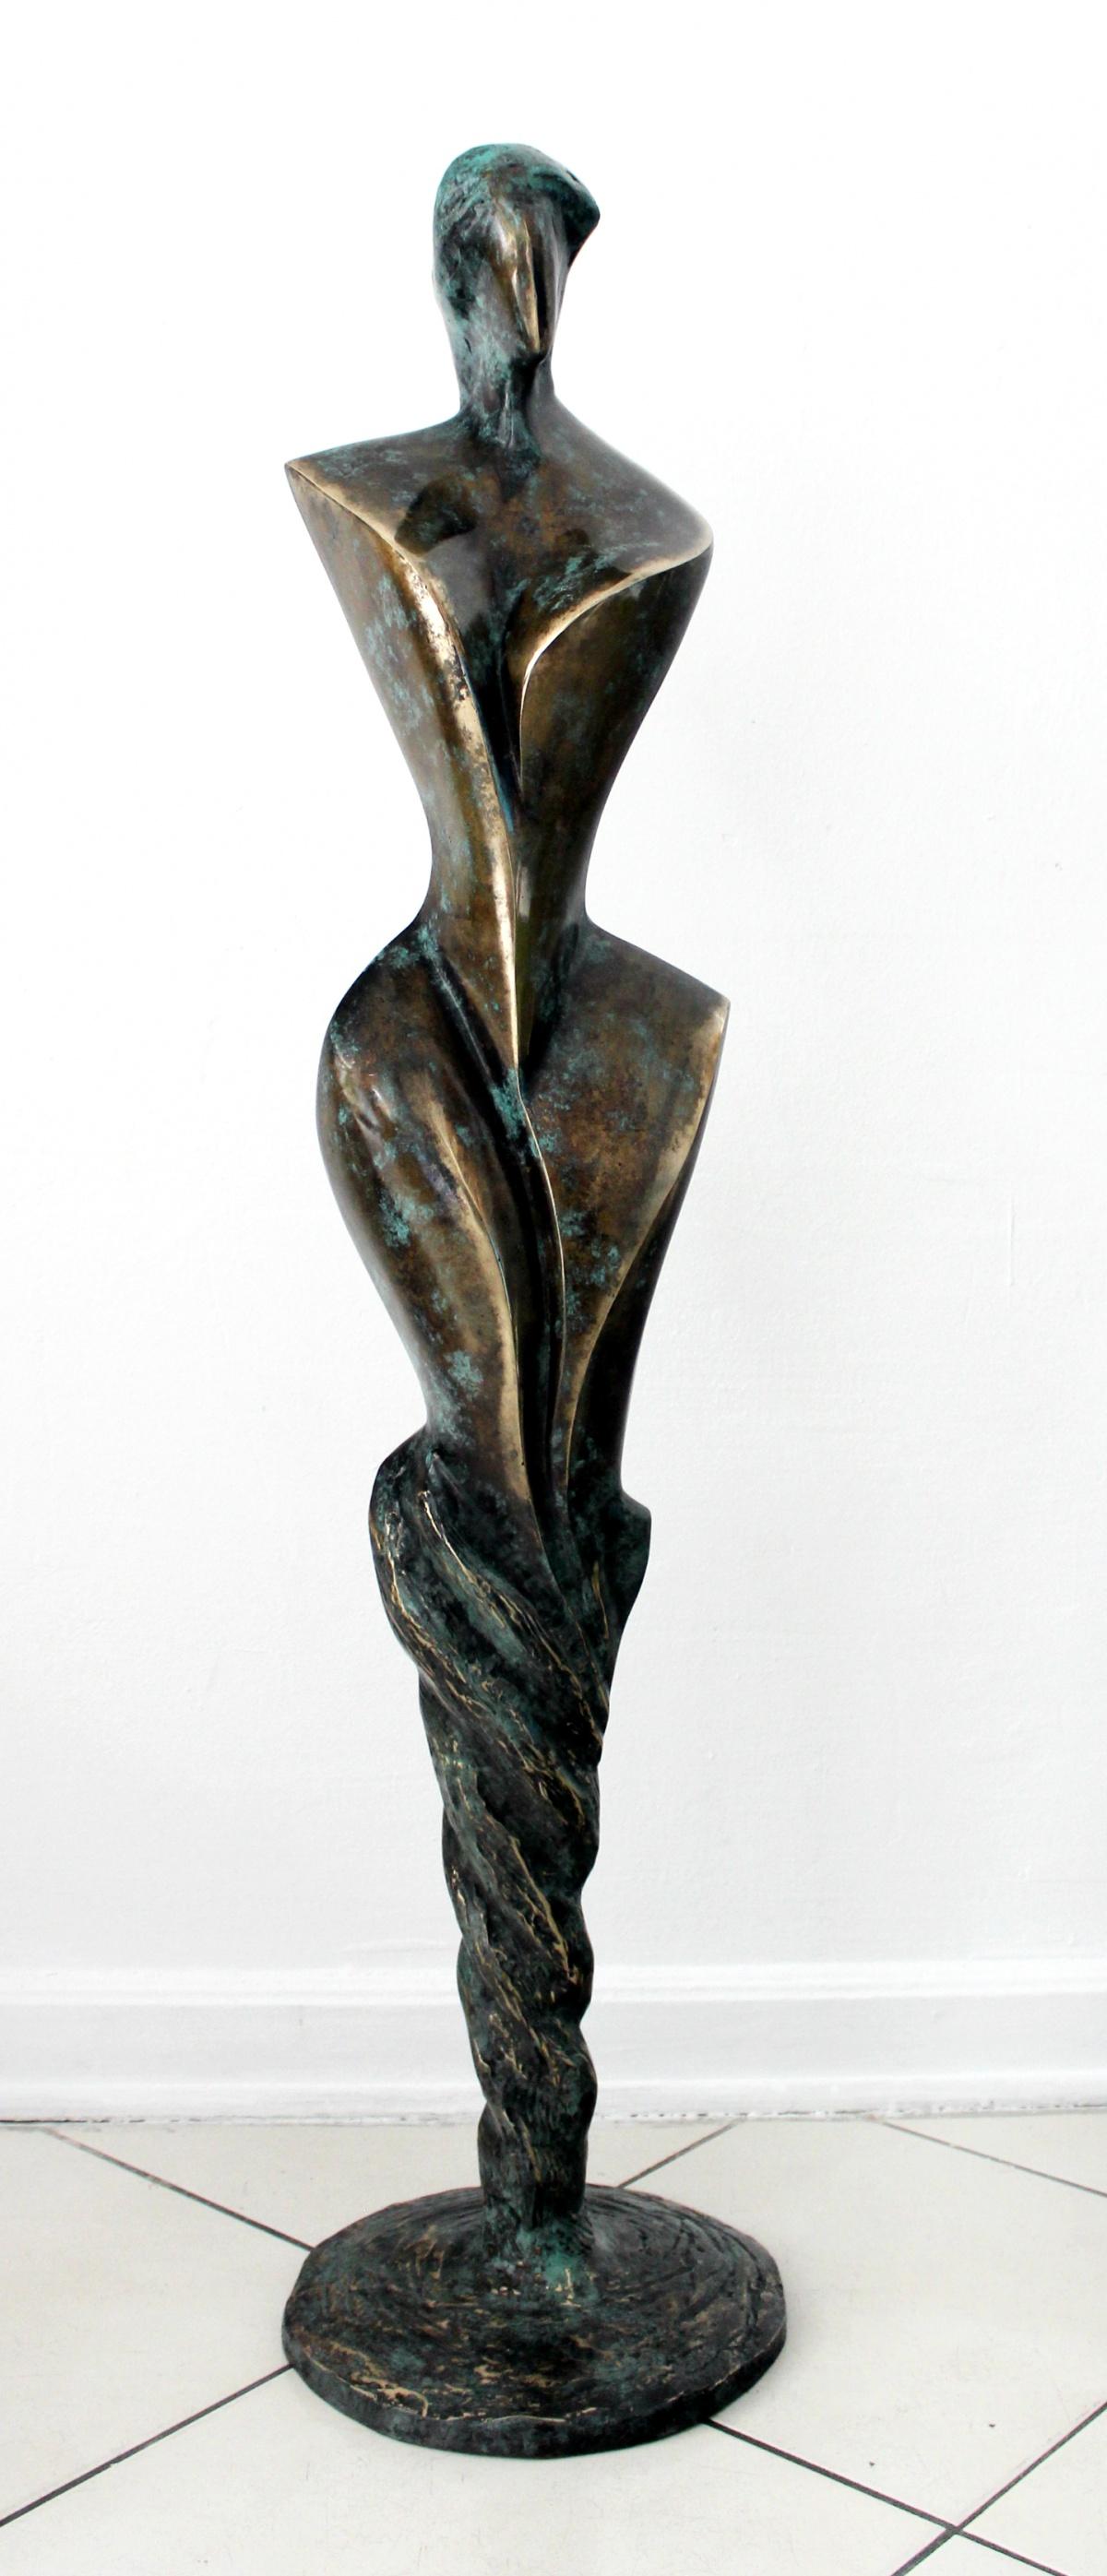 Stanisław Wysocki Figurative Sculpture - Inspiration II - Contemporary Bronze Sculpture, Abstract, Figurative, Nude